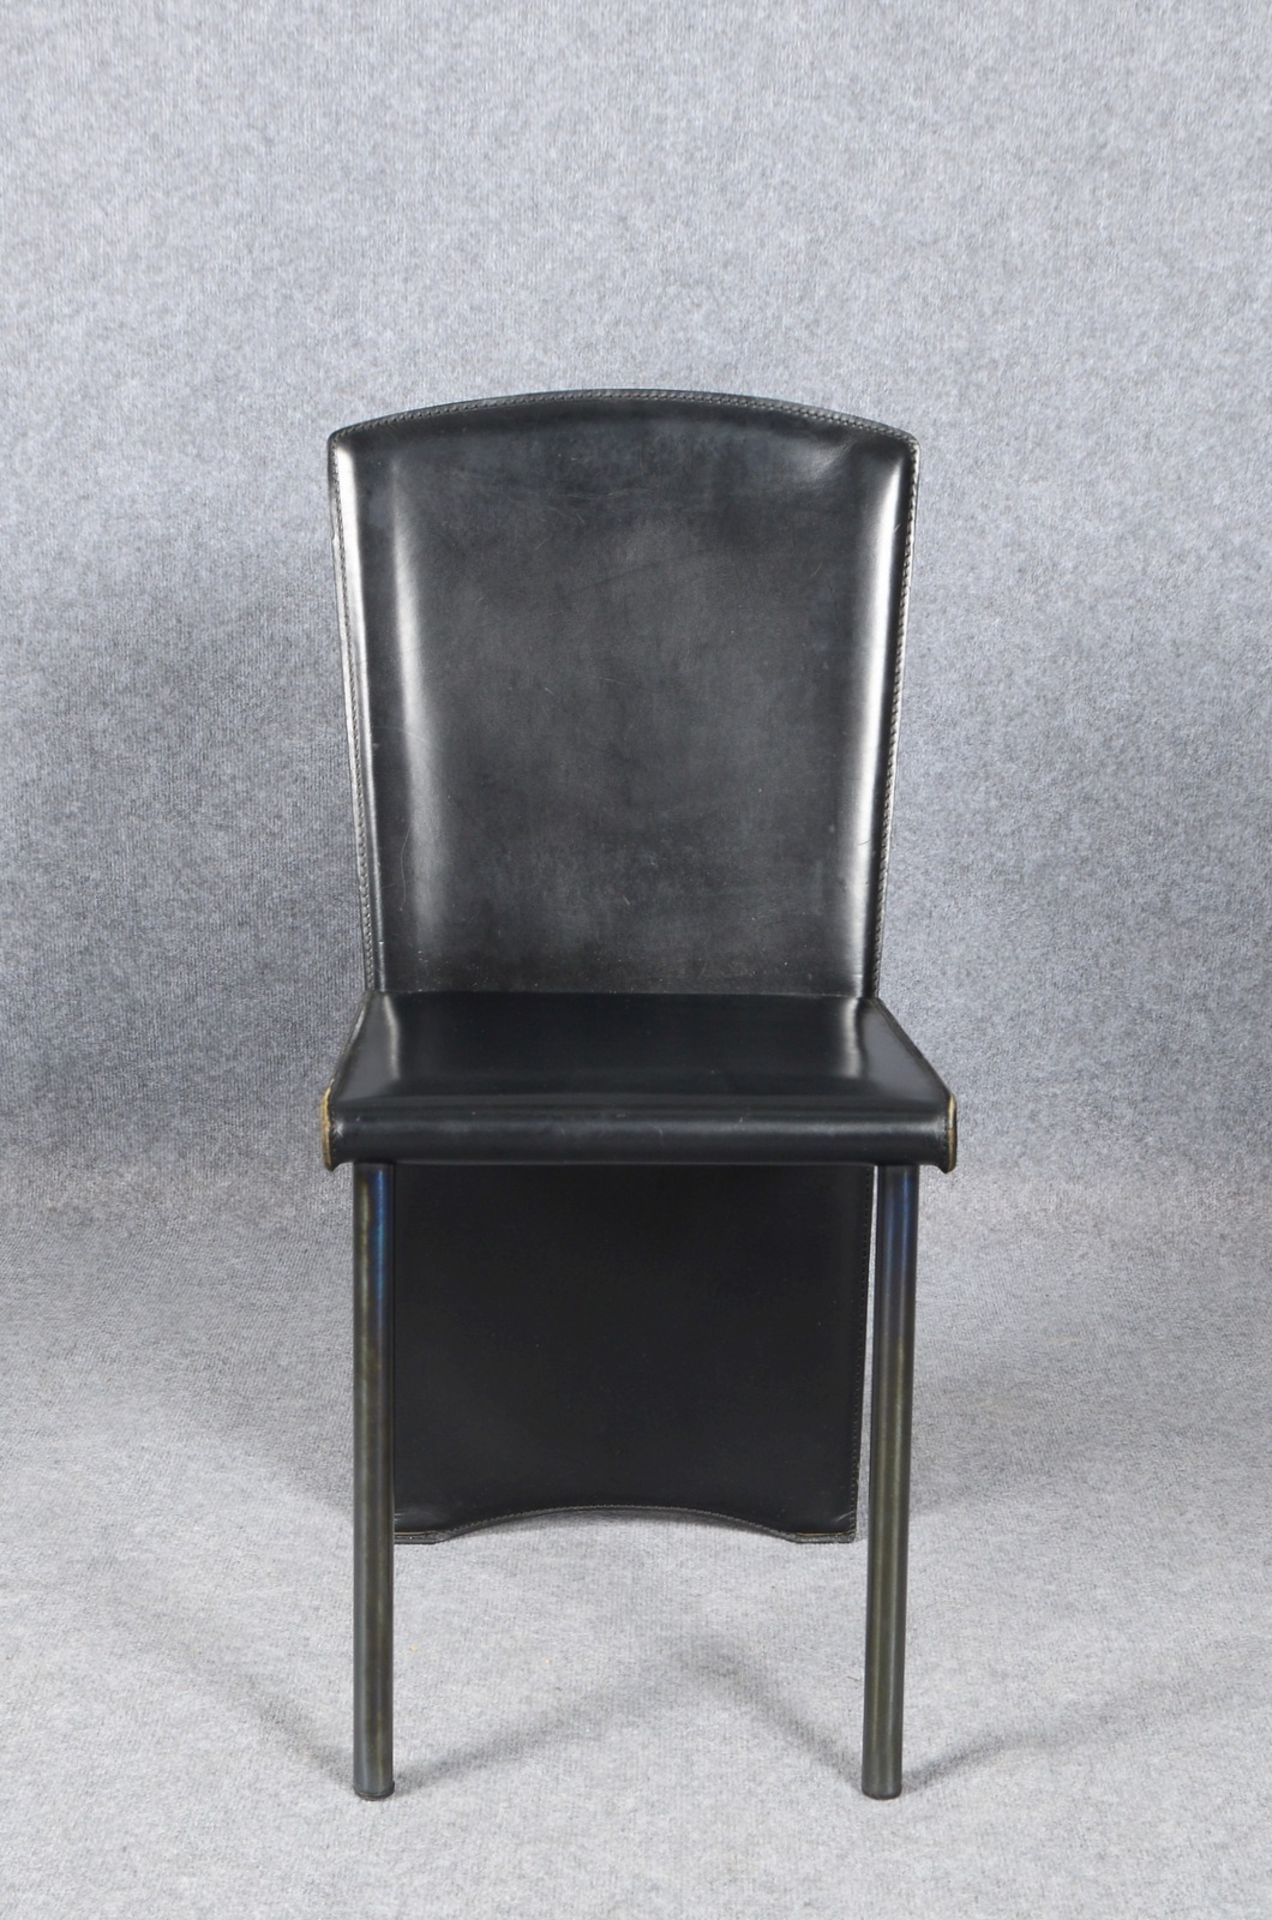 Designer-Stuhl (wohl Zanotta), Leder, Entwurf wohl Roberto Barbieri; Sitzhöhe 46 cm - Bild 2 aus 3